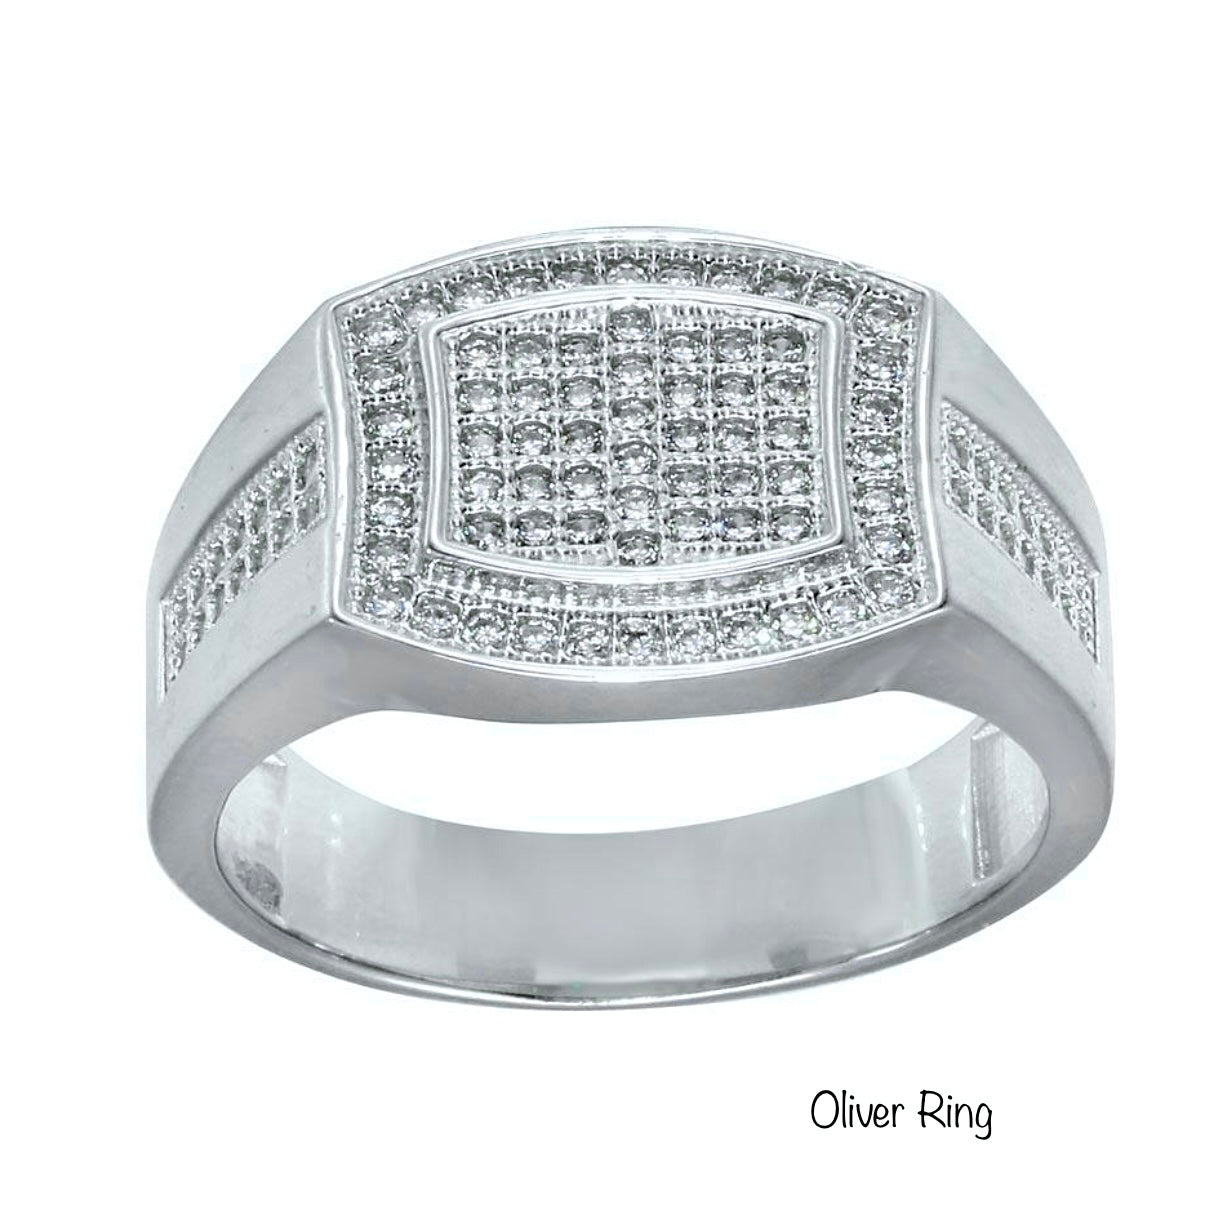 Oliver Ring 11.9mm